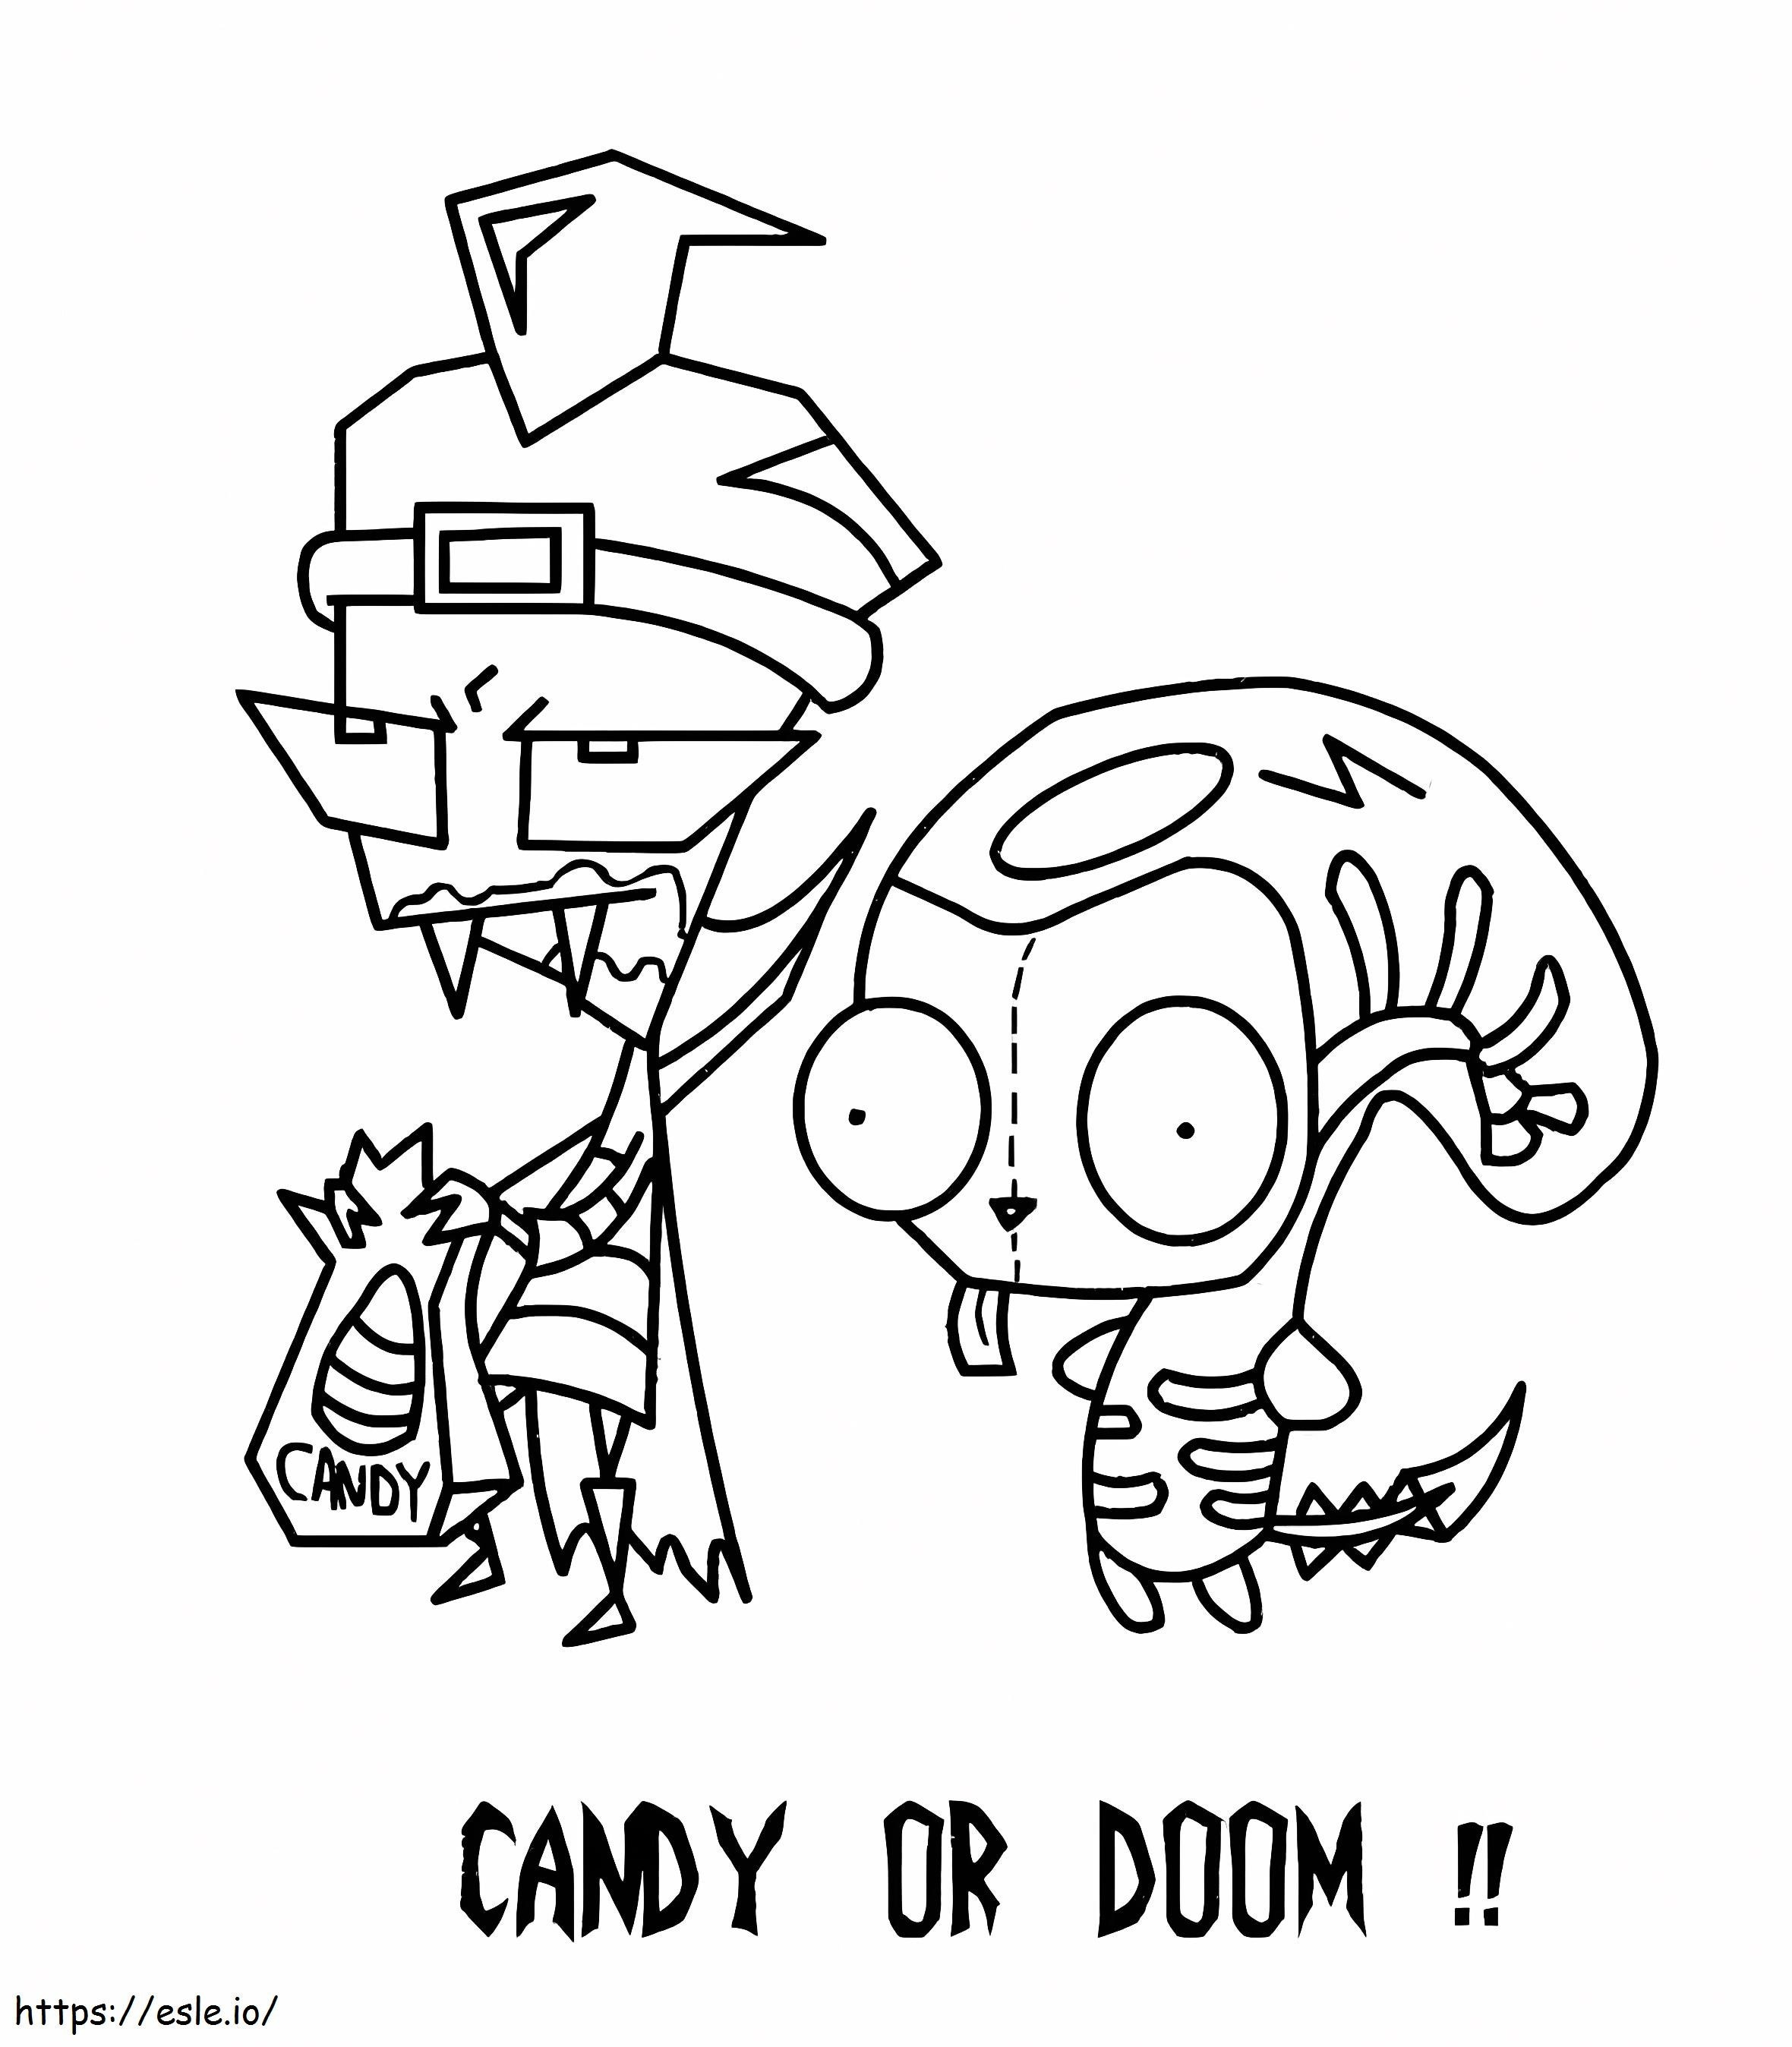 Caramelo o Doom Invader Zim para colorear